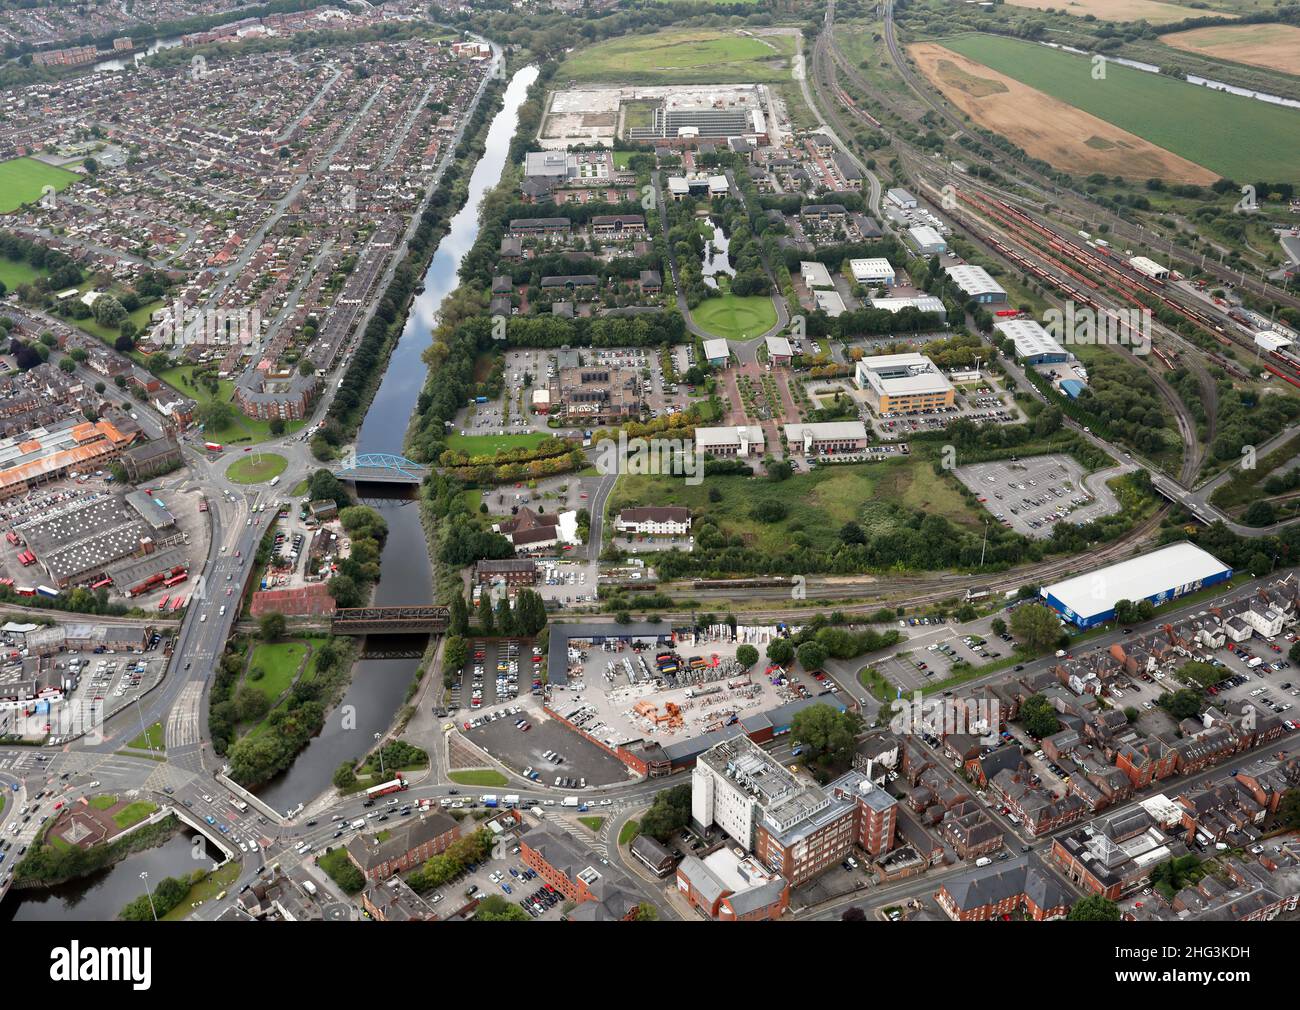 Vista aerea del parco commerciale Centre Park, a sud del centro di Warrington, Cheshire Foto Stock